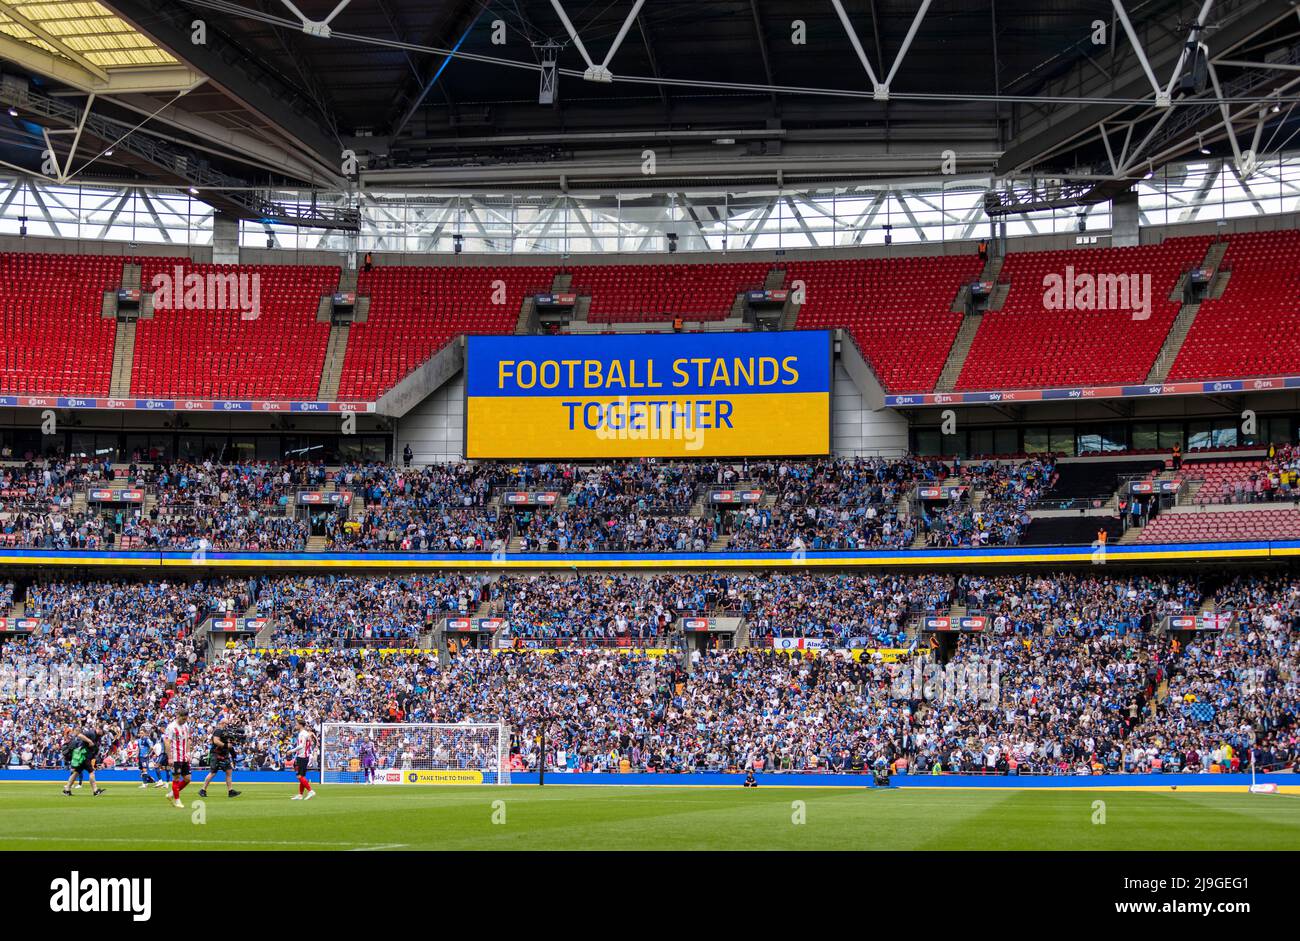 Die Botschaft „Fußball steht zusammen“ wird vor dem Play-off-Finale der Sky Bet League One im Wembley Stadium, London, auf dem großen Bildschirm in den Nationalfarben der Ukraine angezeigt. Bilddatum: Samstag, 21. Mai 2022. Stockfoto